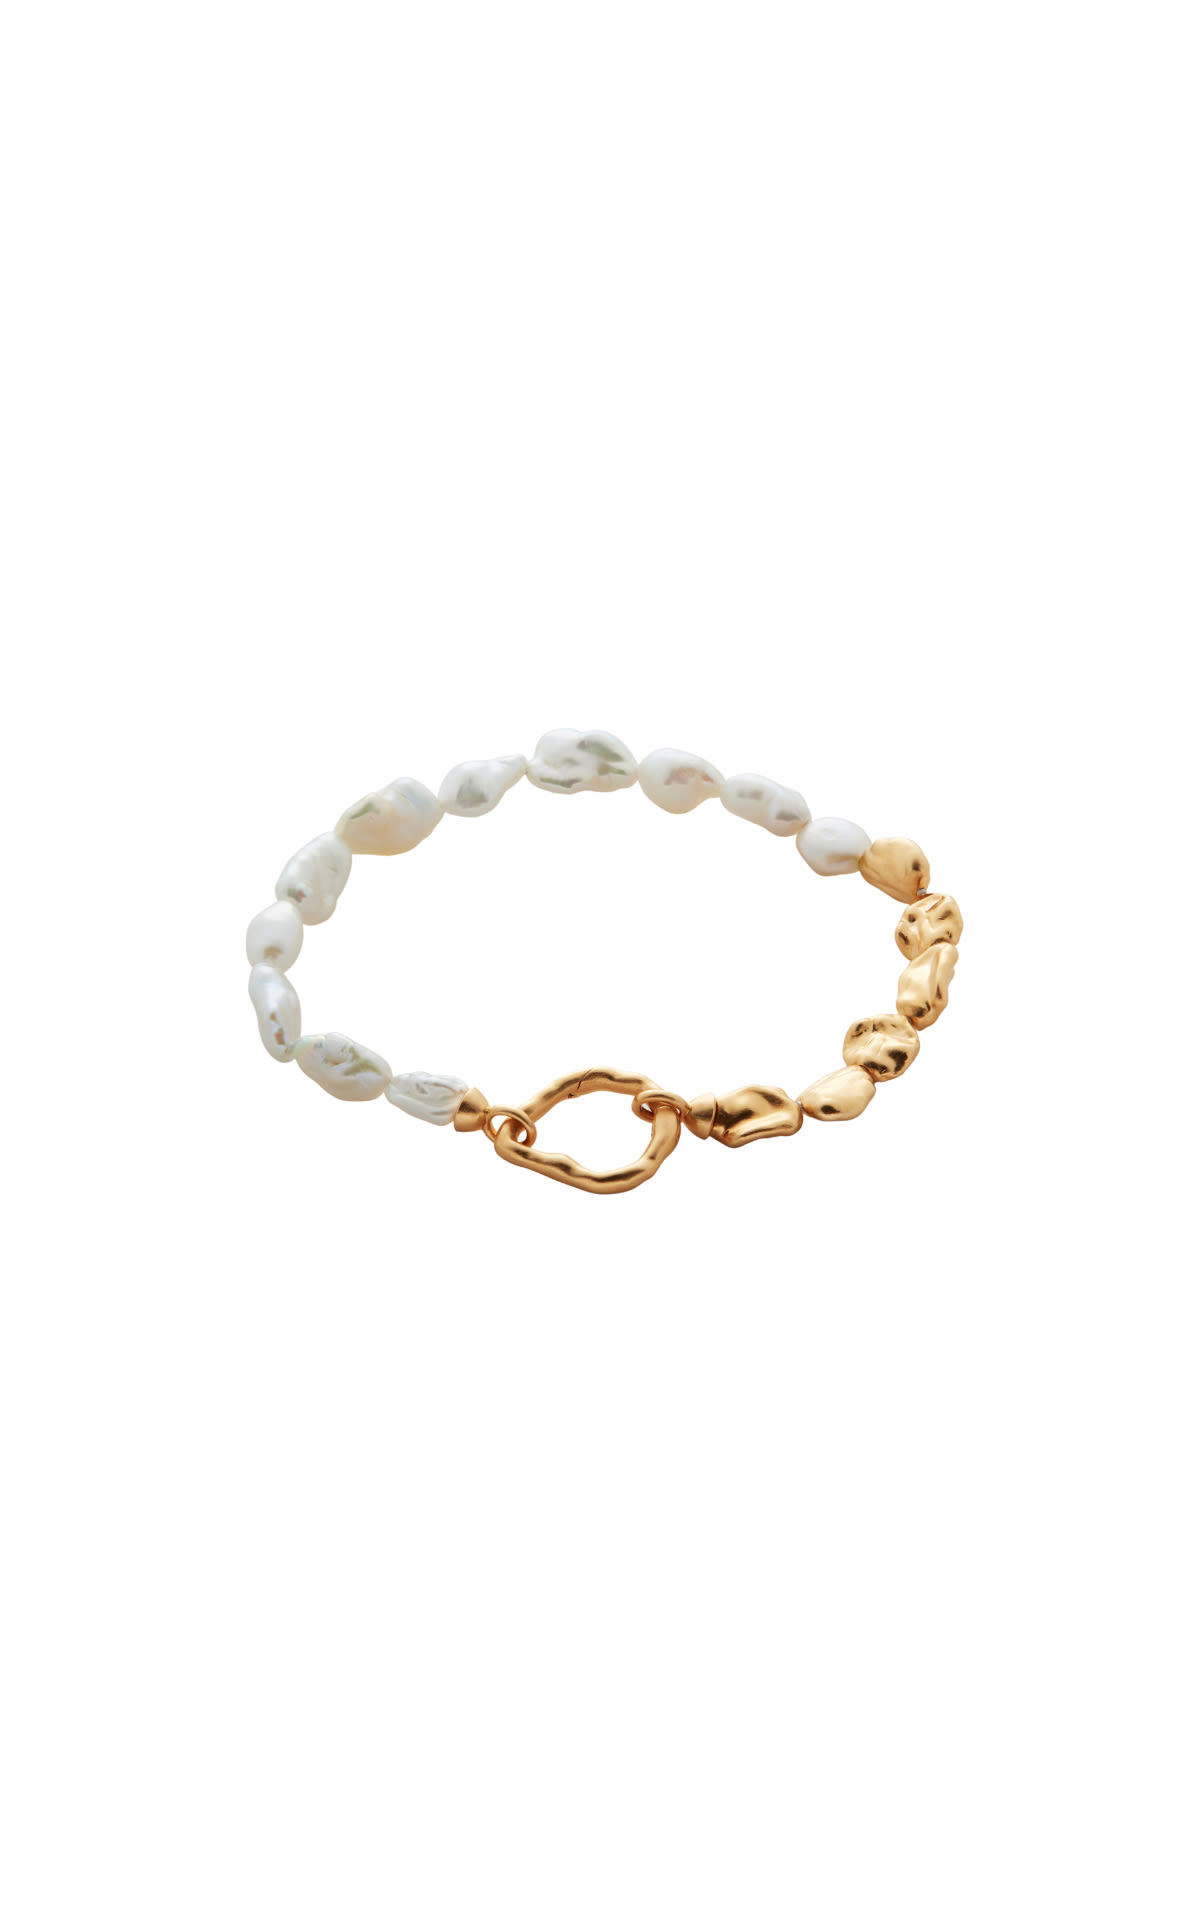 Monica Vinader 18ct gold vermeil keshi pearl bracelet from Bicester Village